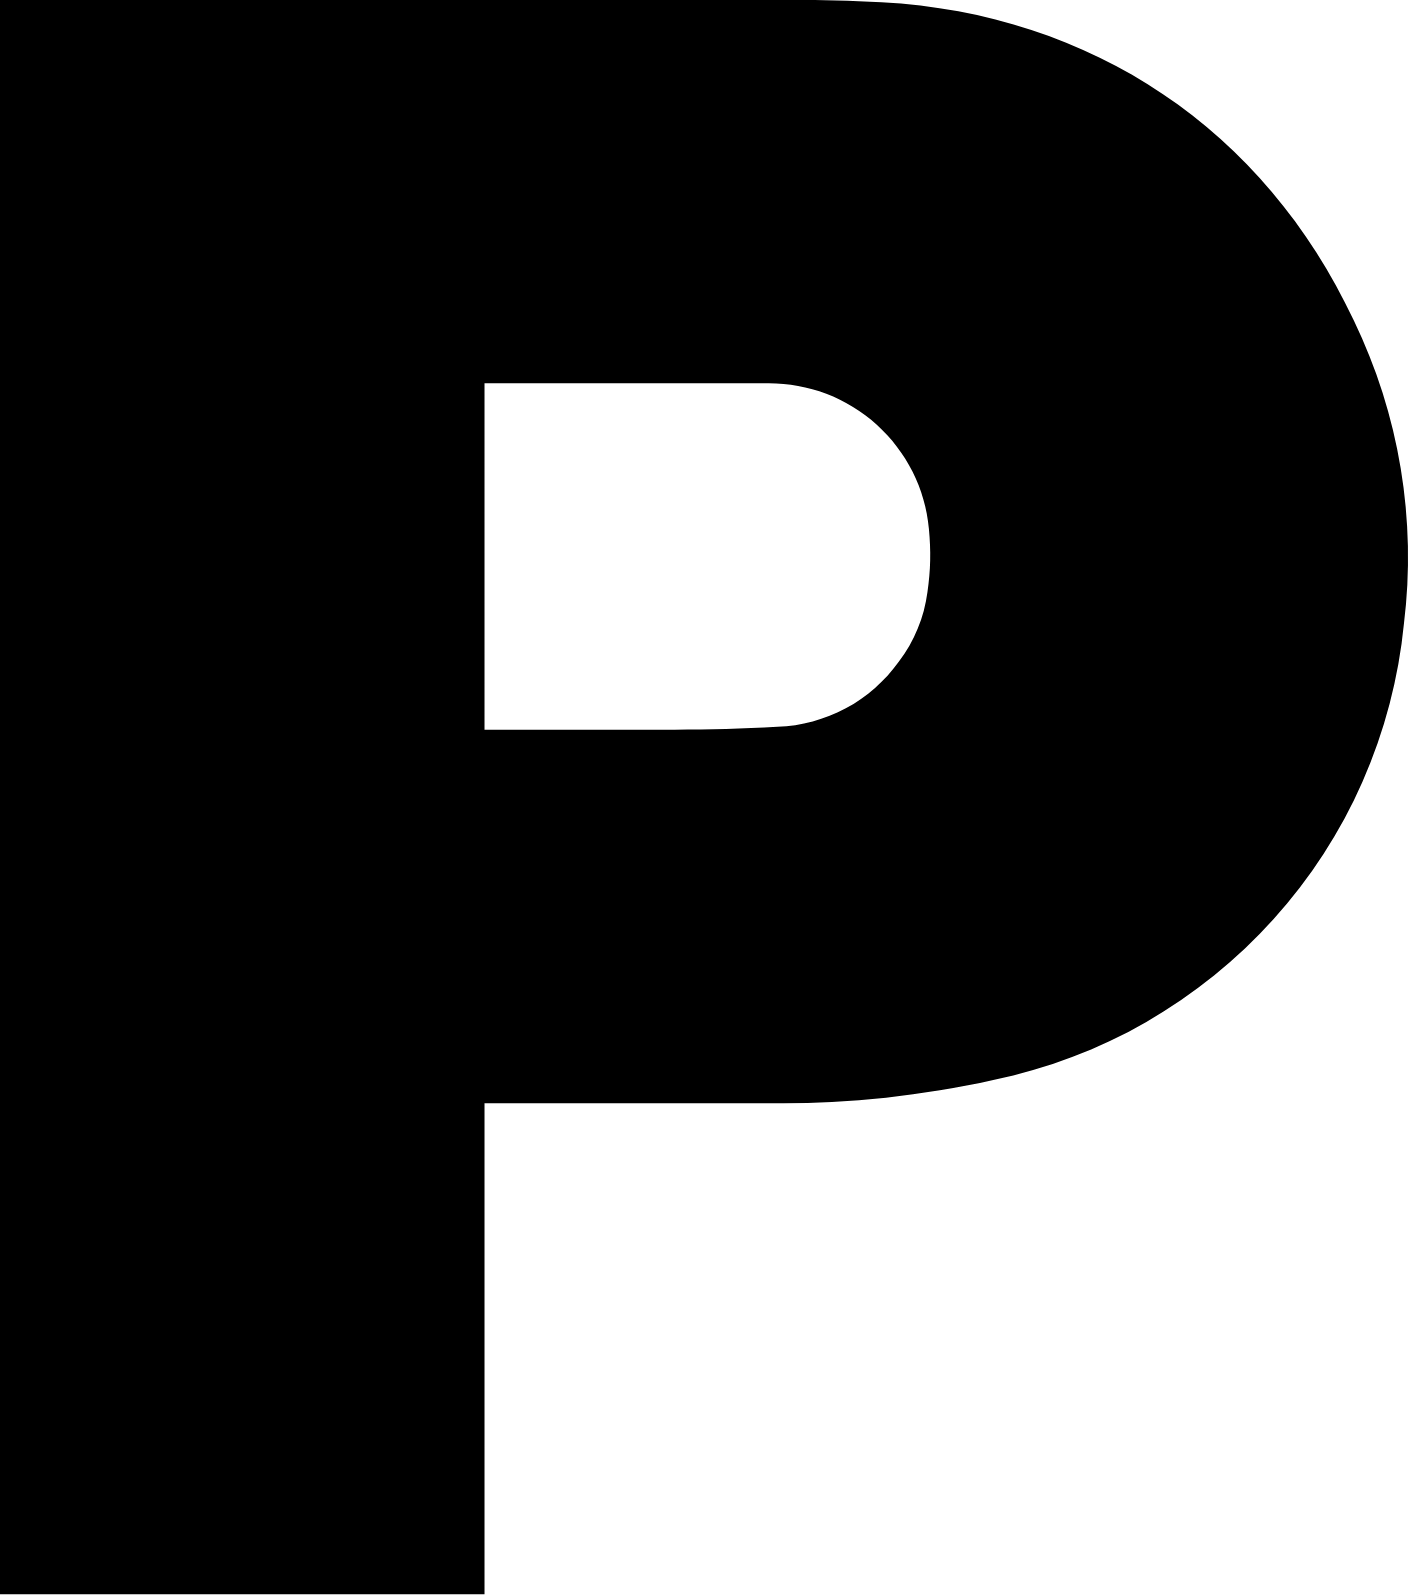 Panasonic logo (PNG transparent)